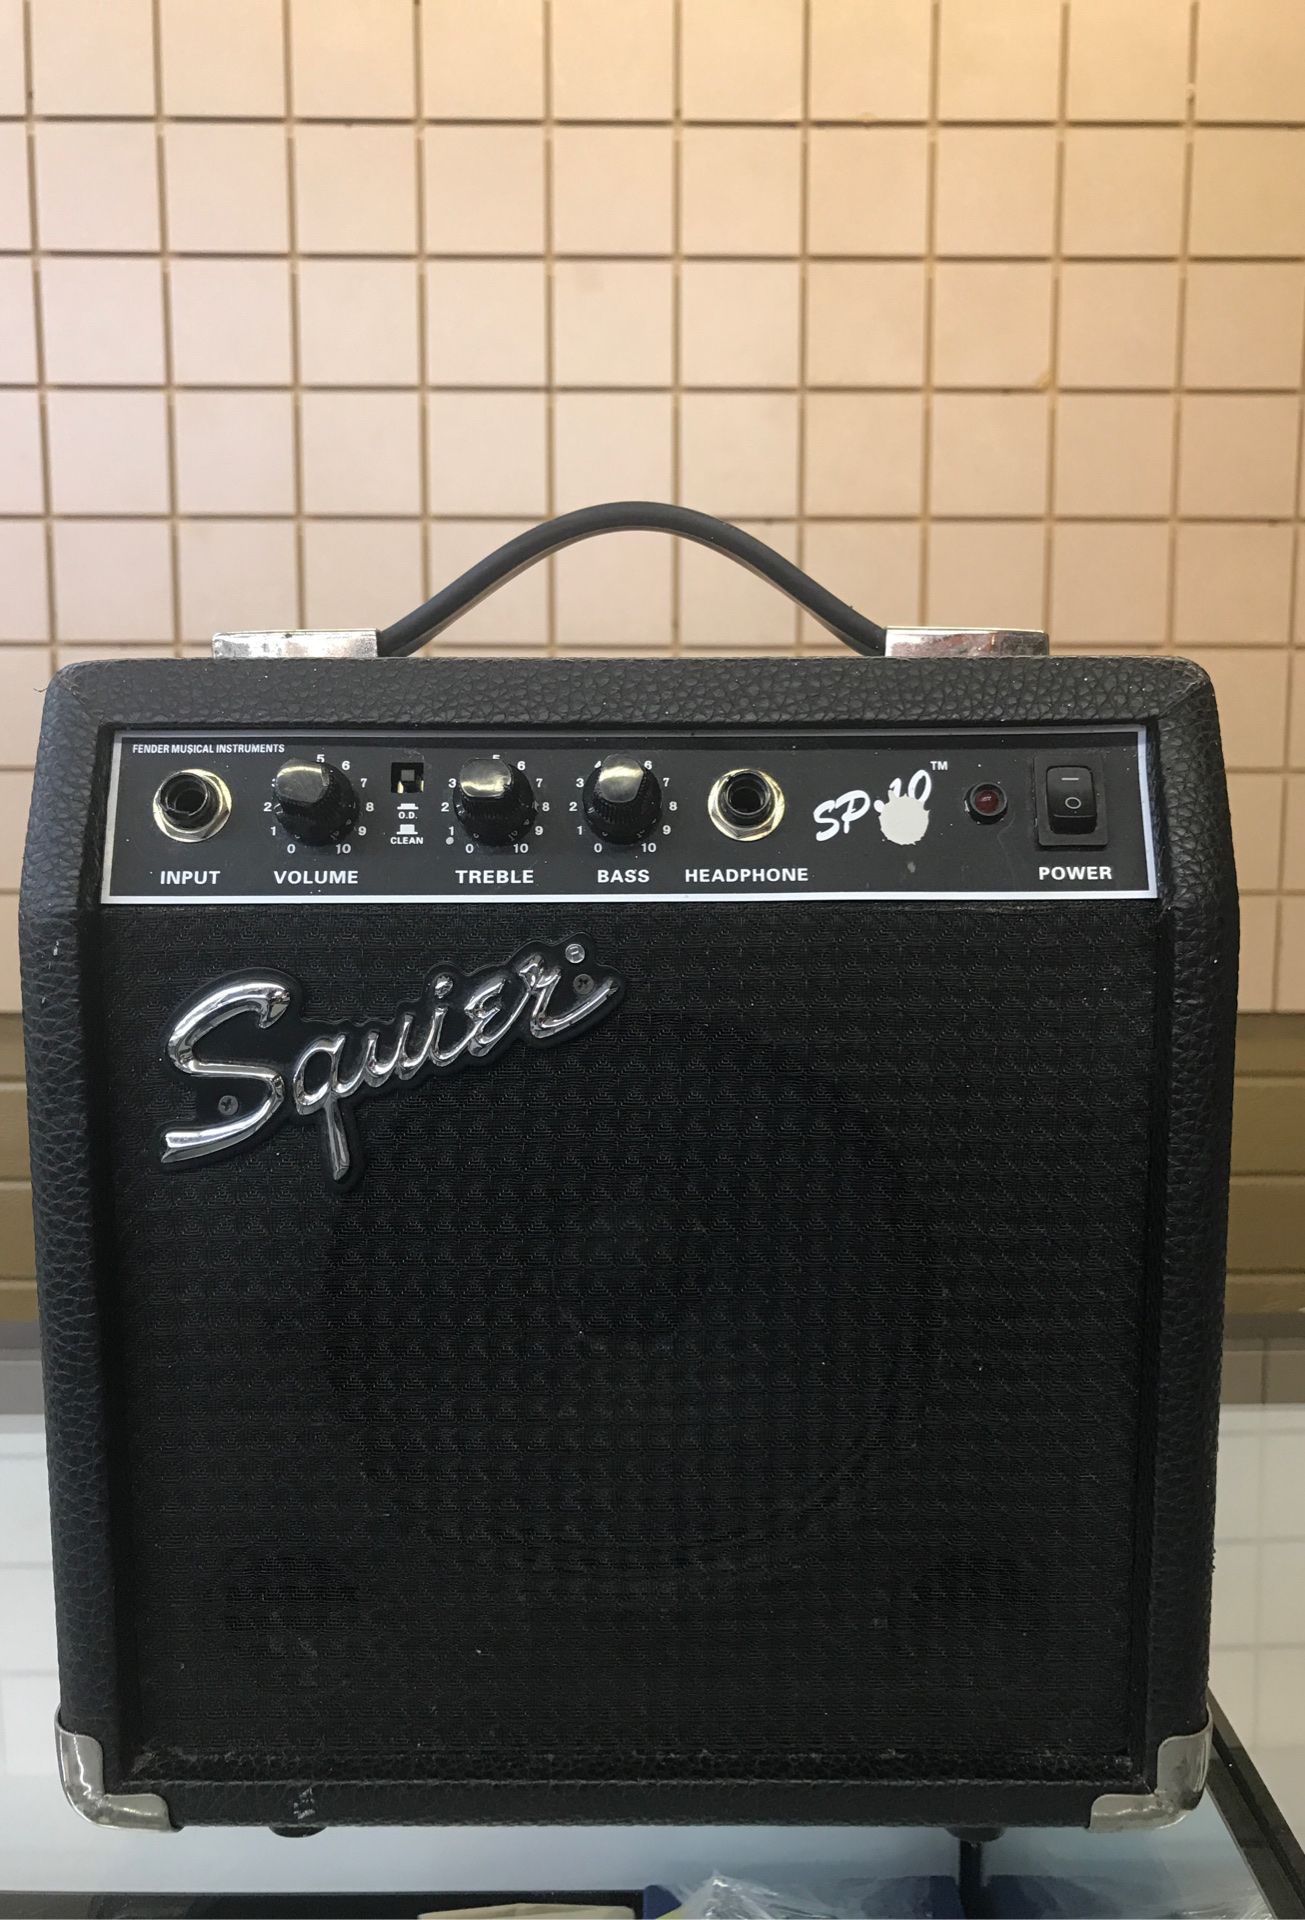 Squires Model SP.10 Guitar Amplifier